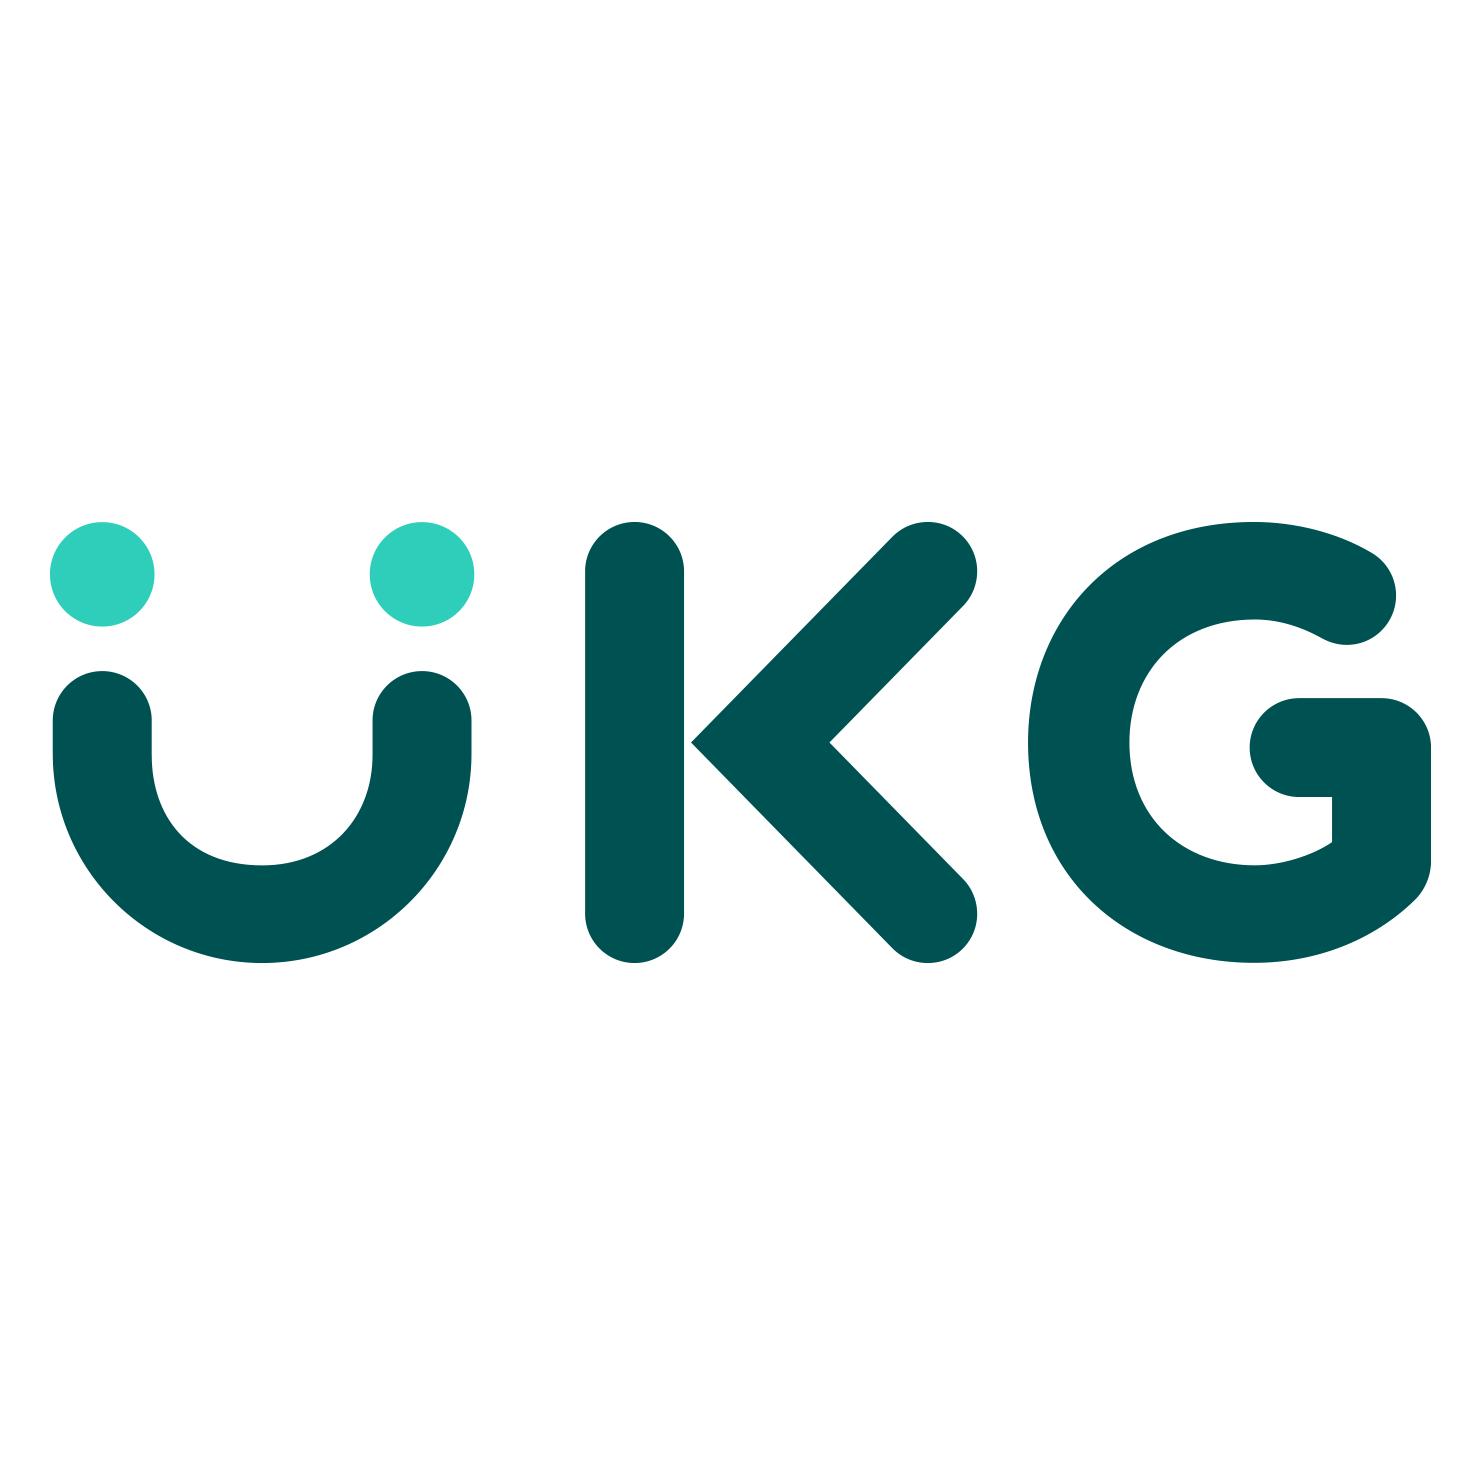 UKG Ready Logo